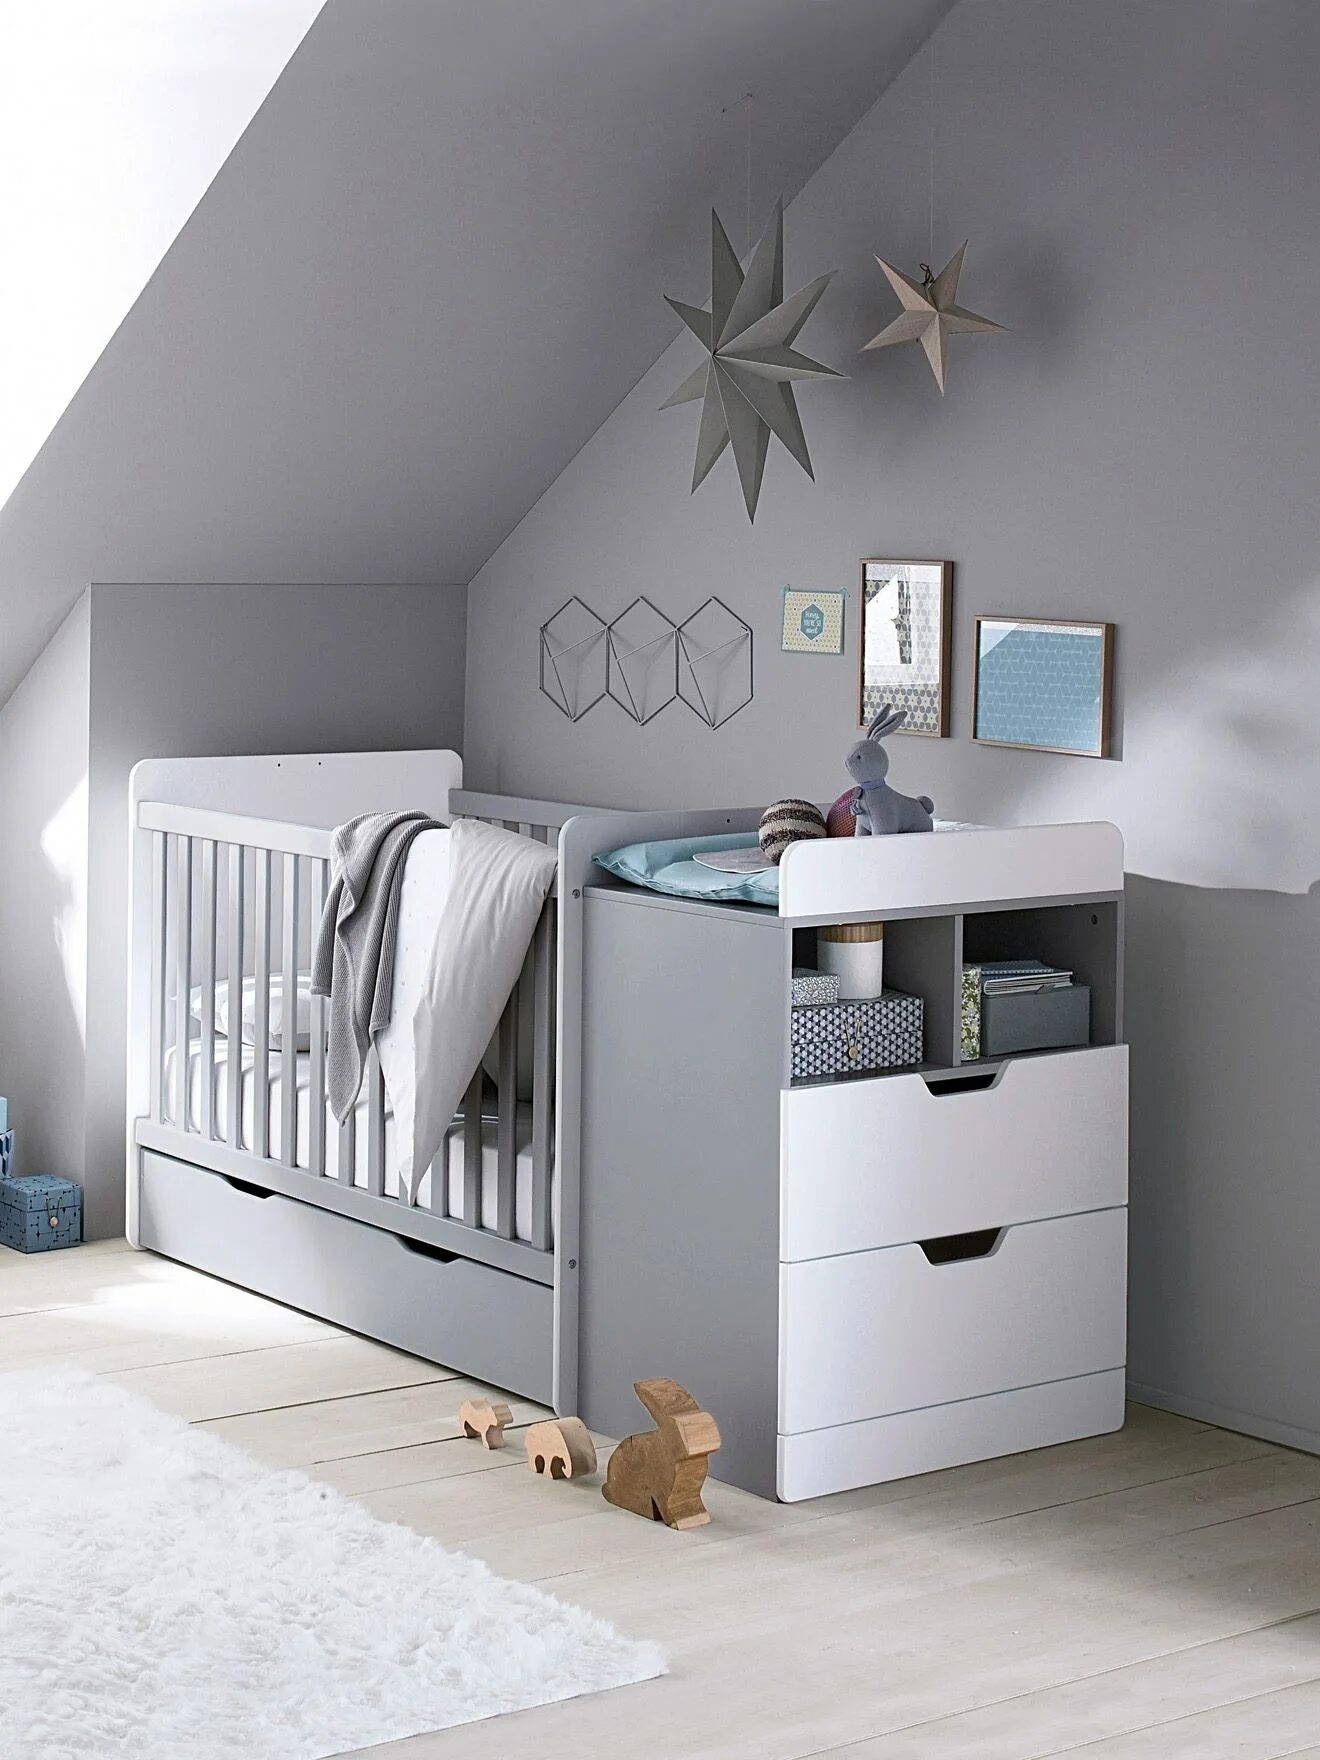 Детская мебель серая. Серая мебель в детской. Комната для новорожденных. Кровать детская серая. Кровать для новорожденного мальчика.